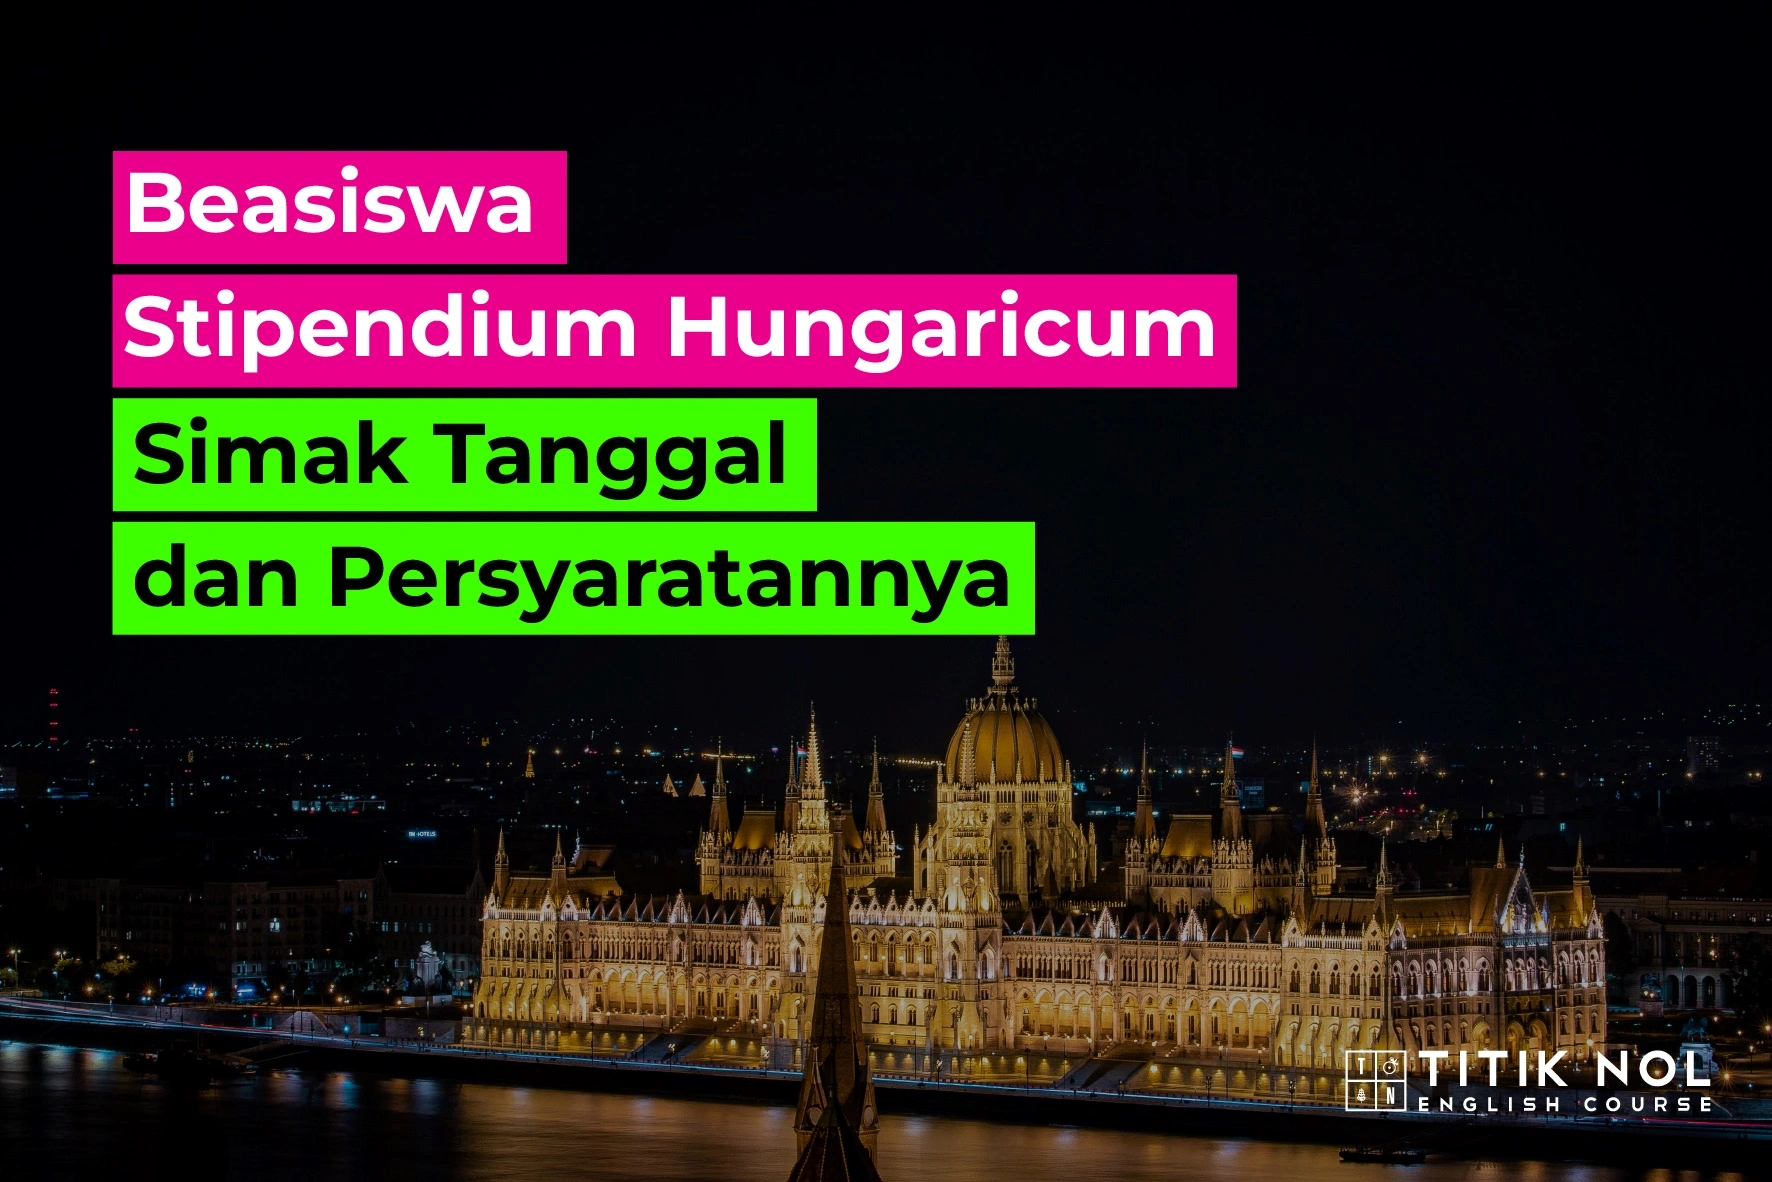 Beasiswa Stipendium Hungaricum